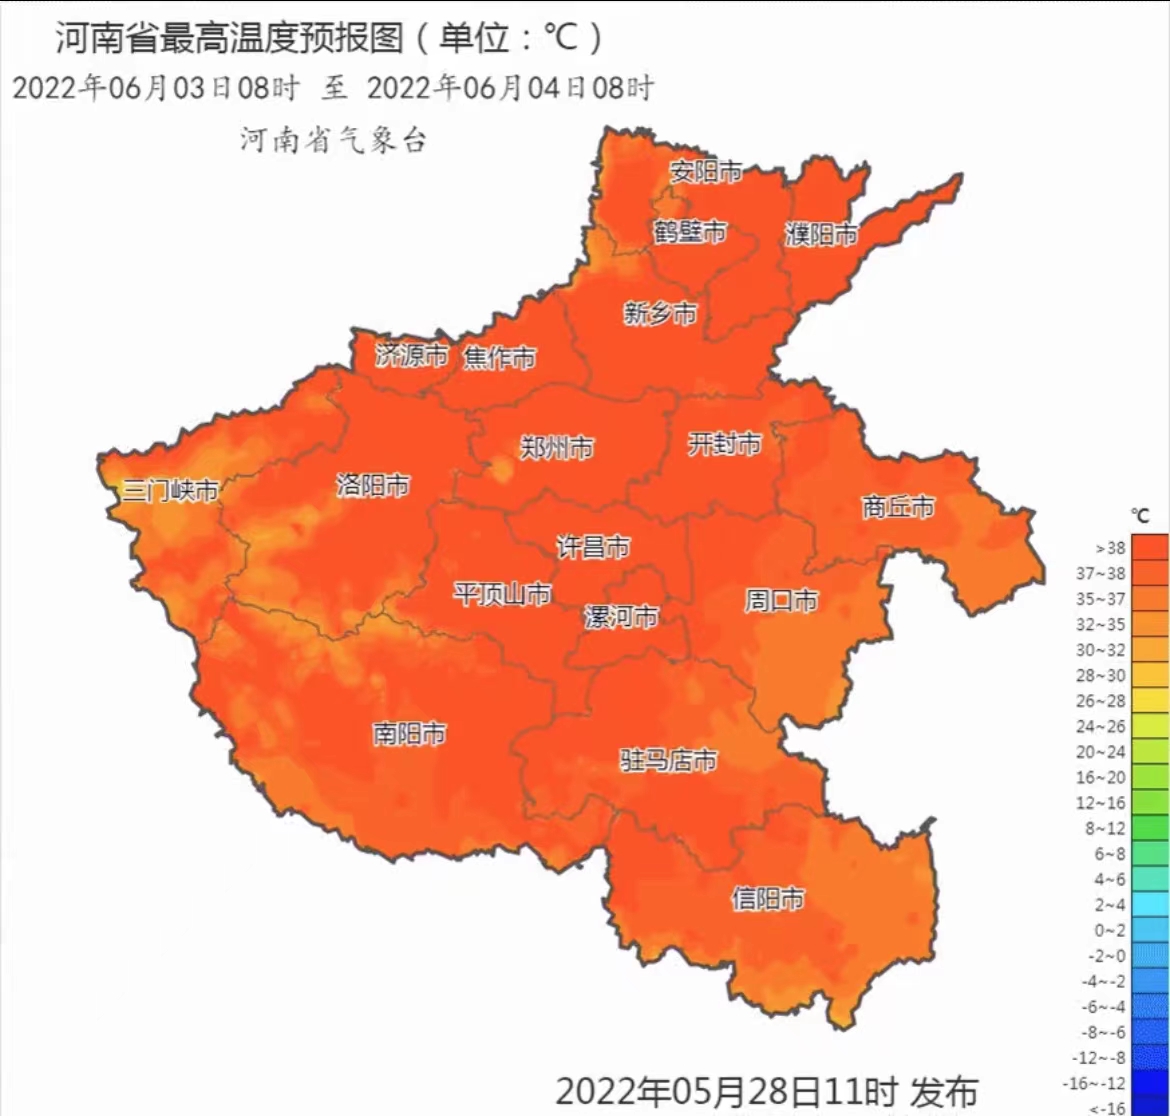 6月4日前河南省将出现5天左右高温天气 北中部部分县市最高气温可达40℃